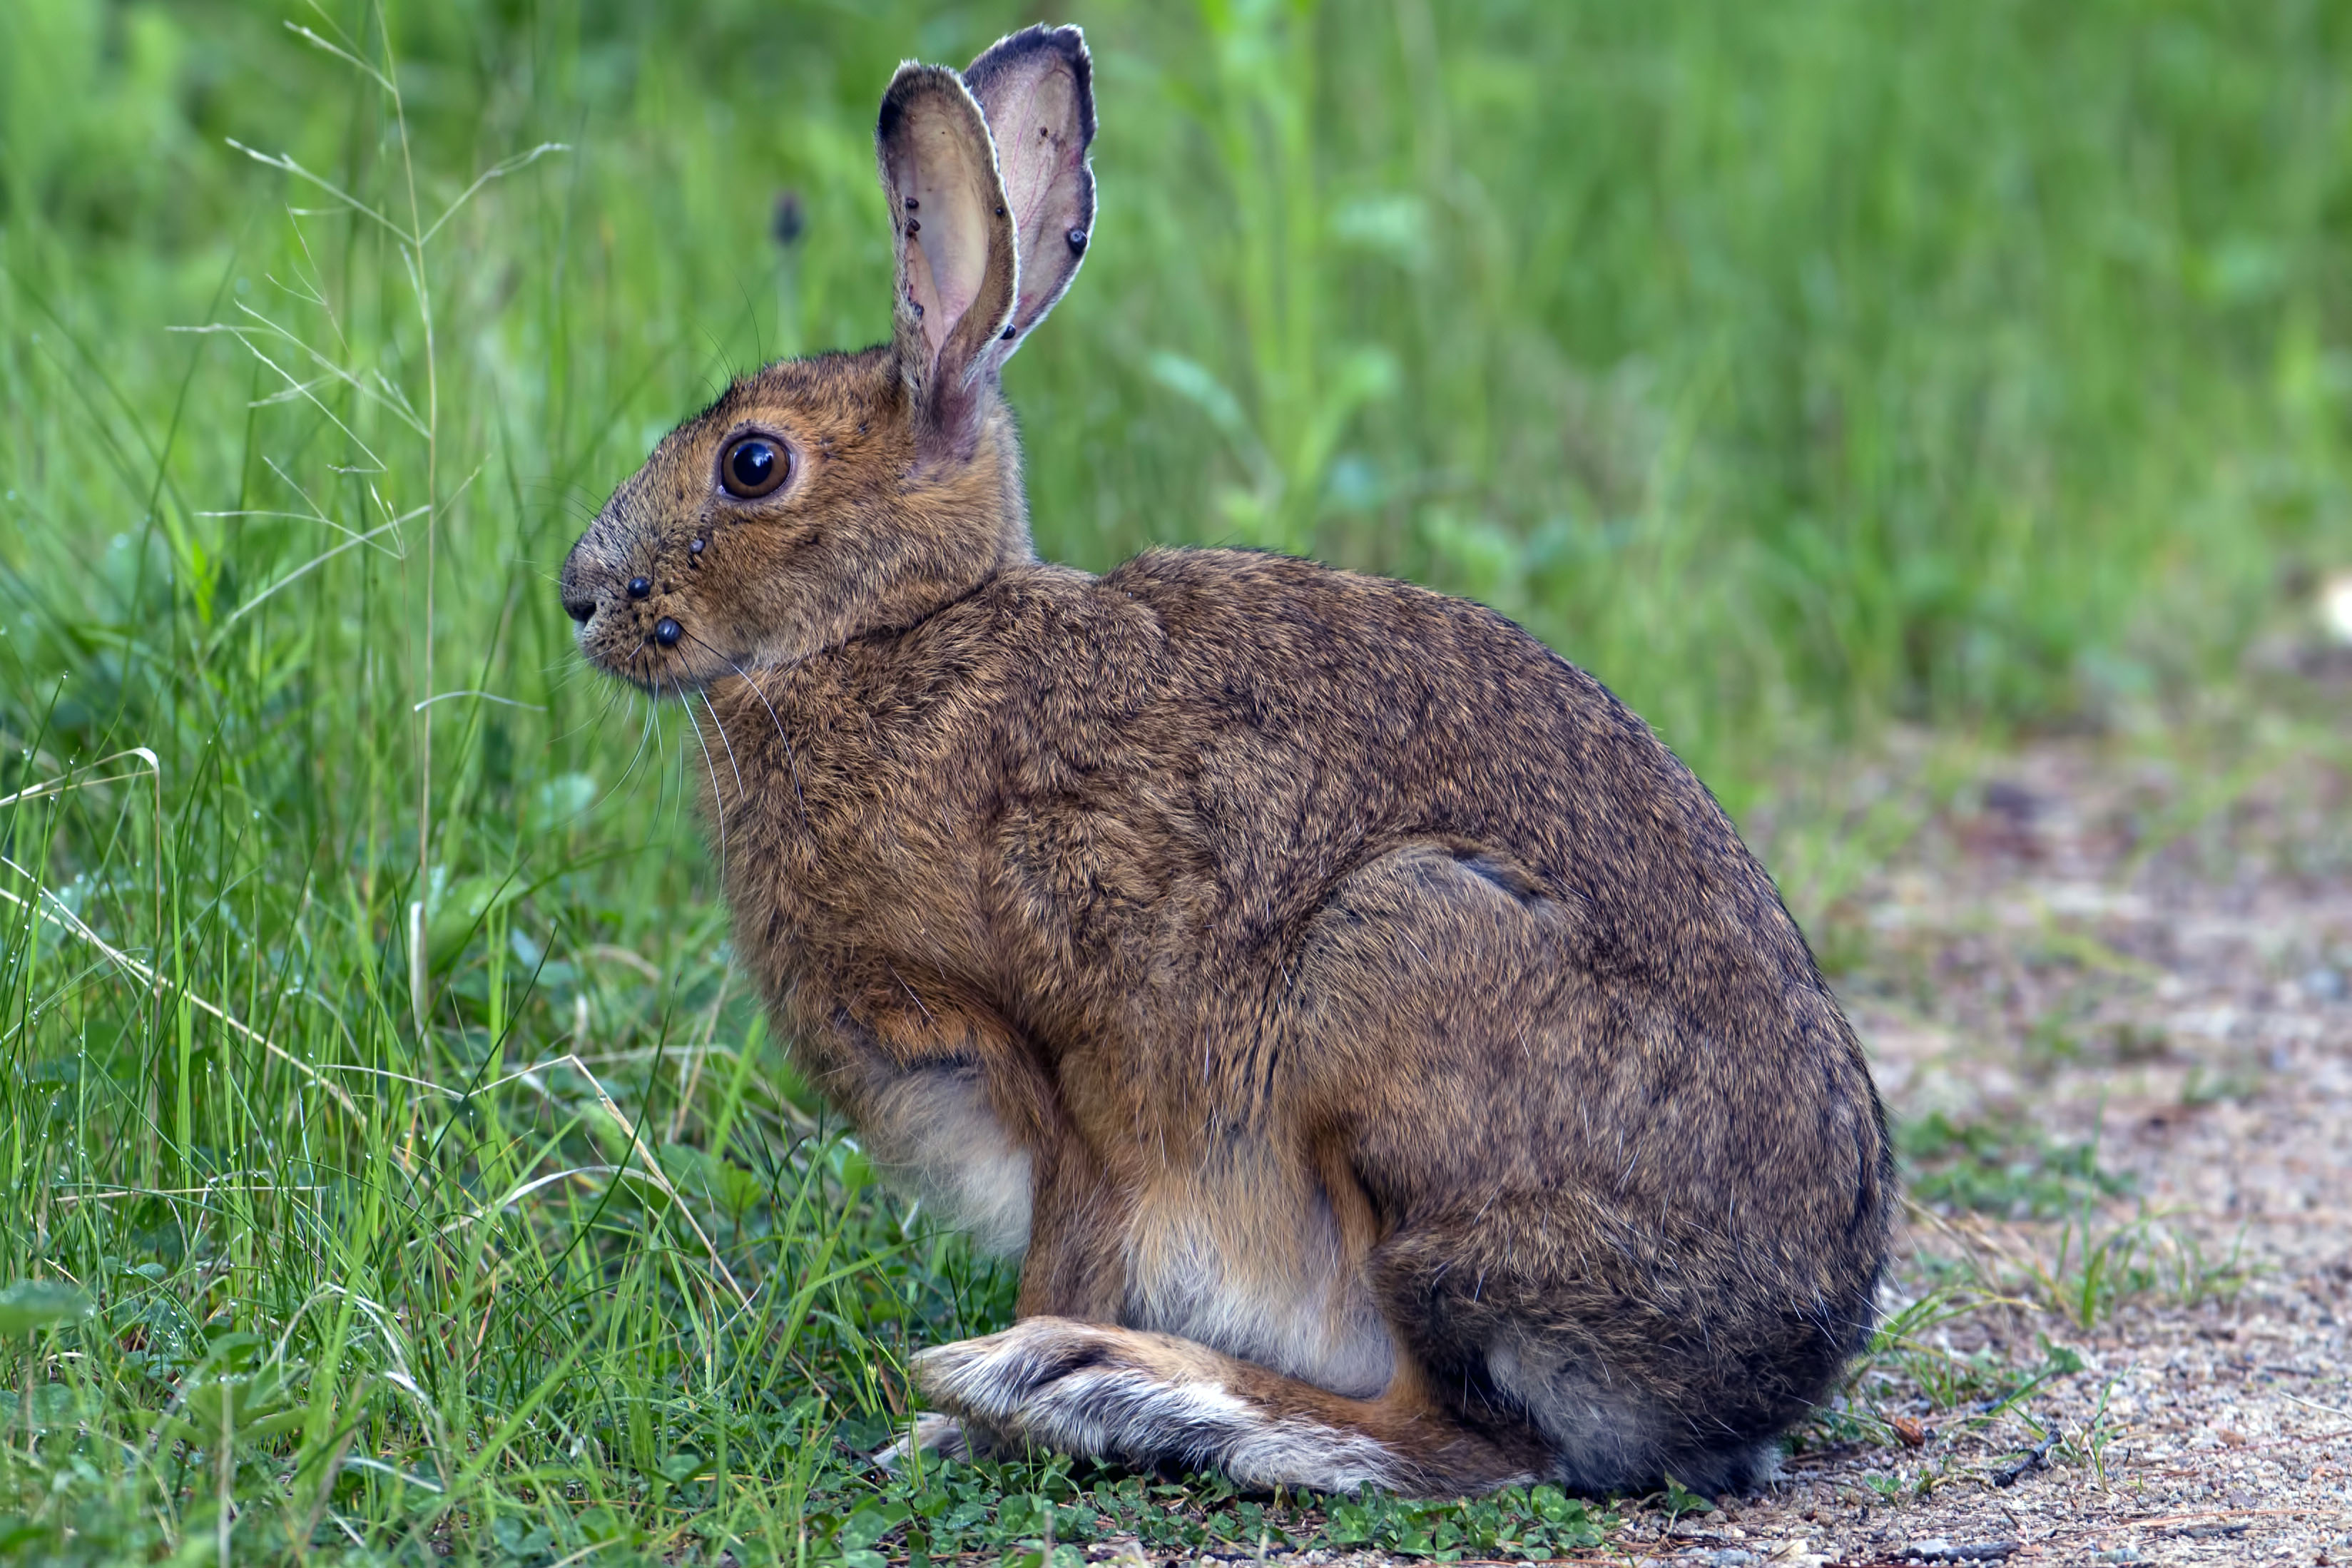 Snowshoe Hare (Lepus americanus) in the summer